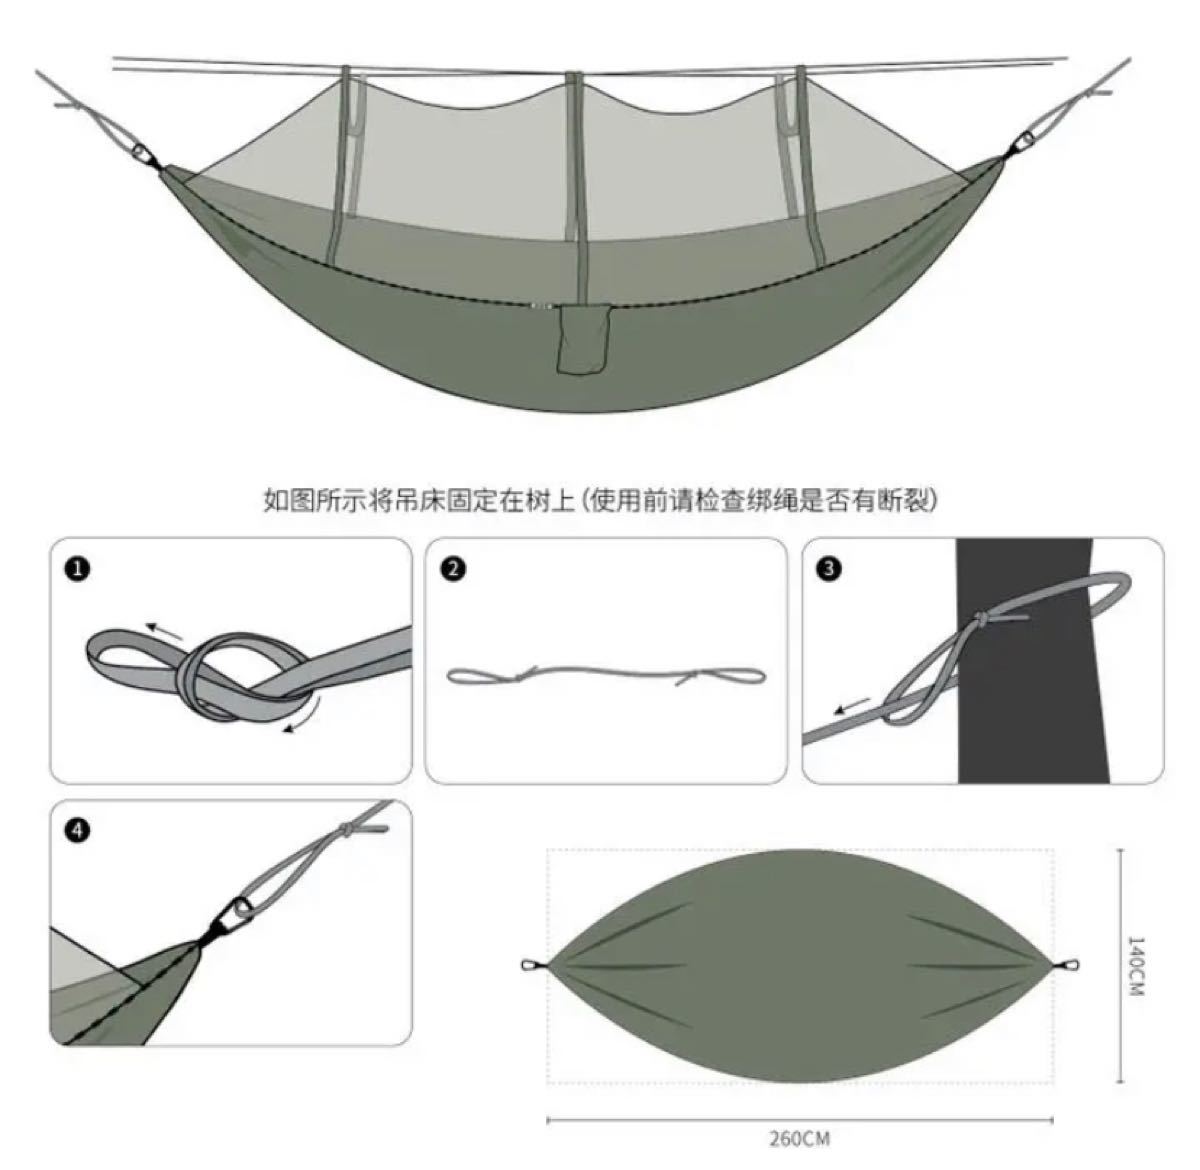  ハンモック 蚊帳付き 超軽量 通気性パラシュート耐荷重300kg 広い 2人用　新品